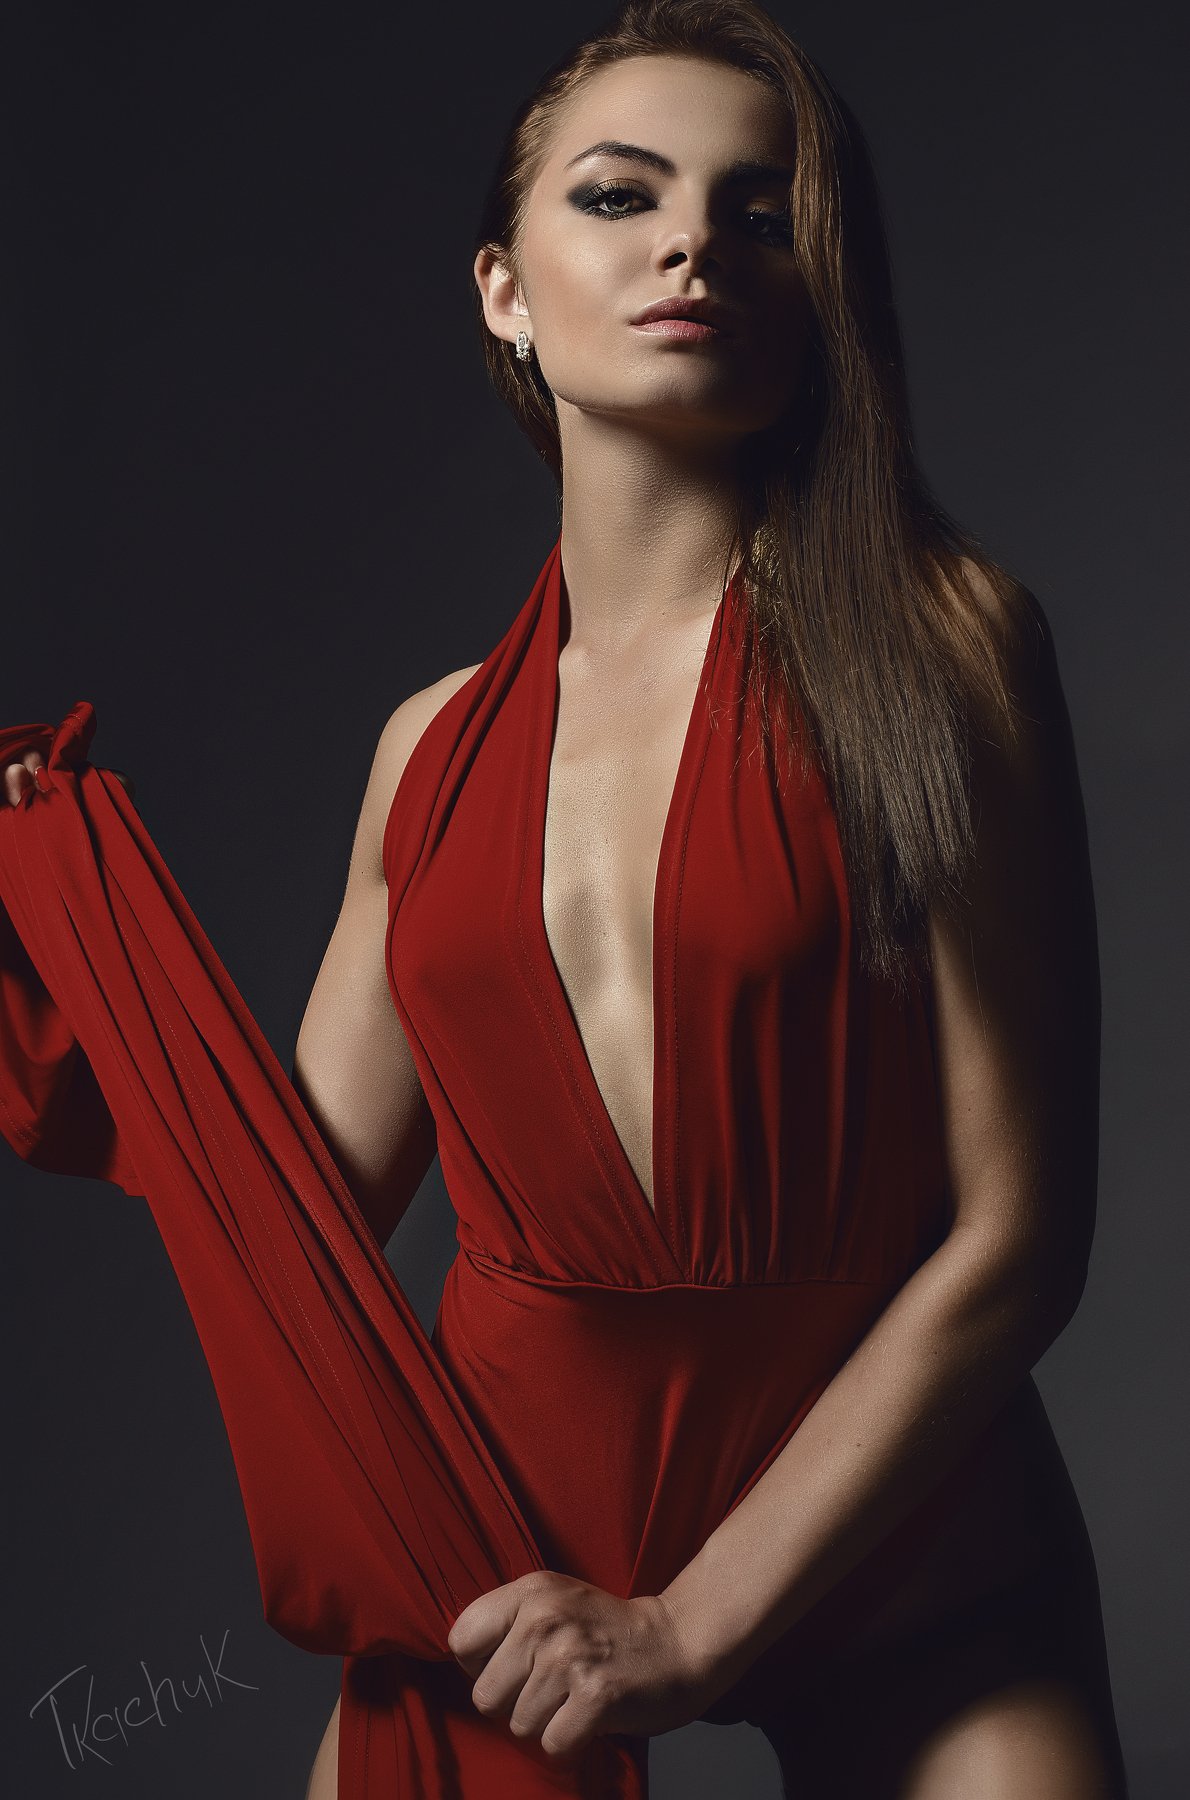 Модель#арт#студия#жанр#ню#девушка#красное платье#, Ткачук Наталия